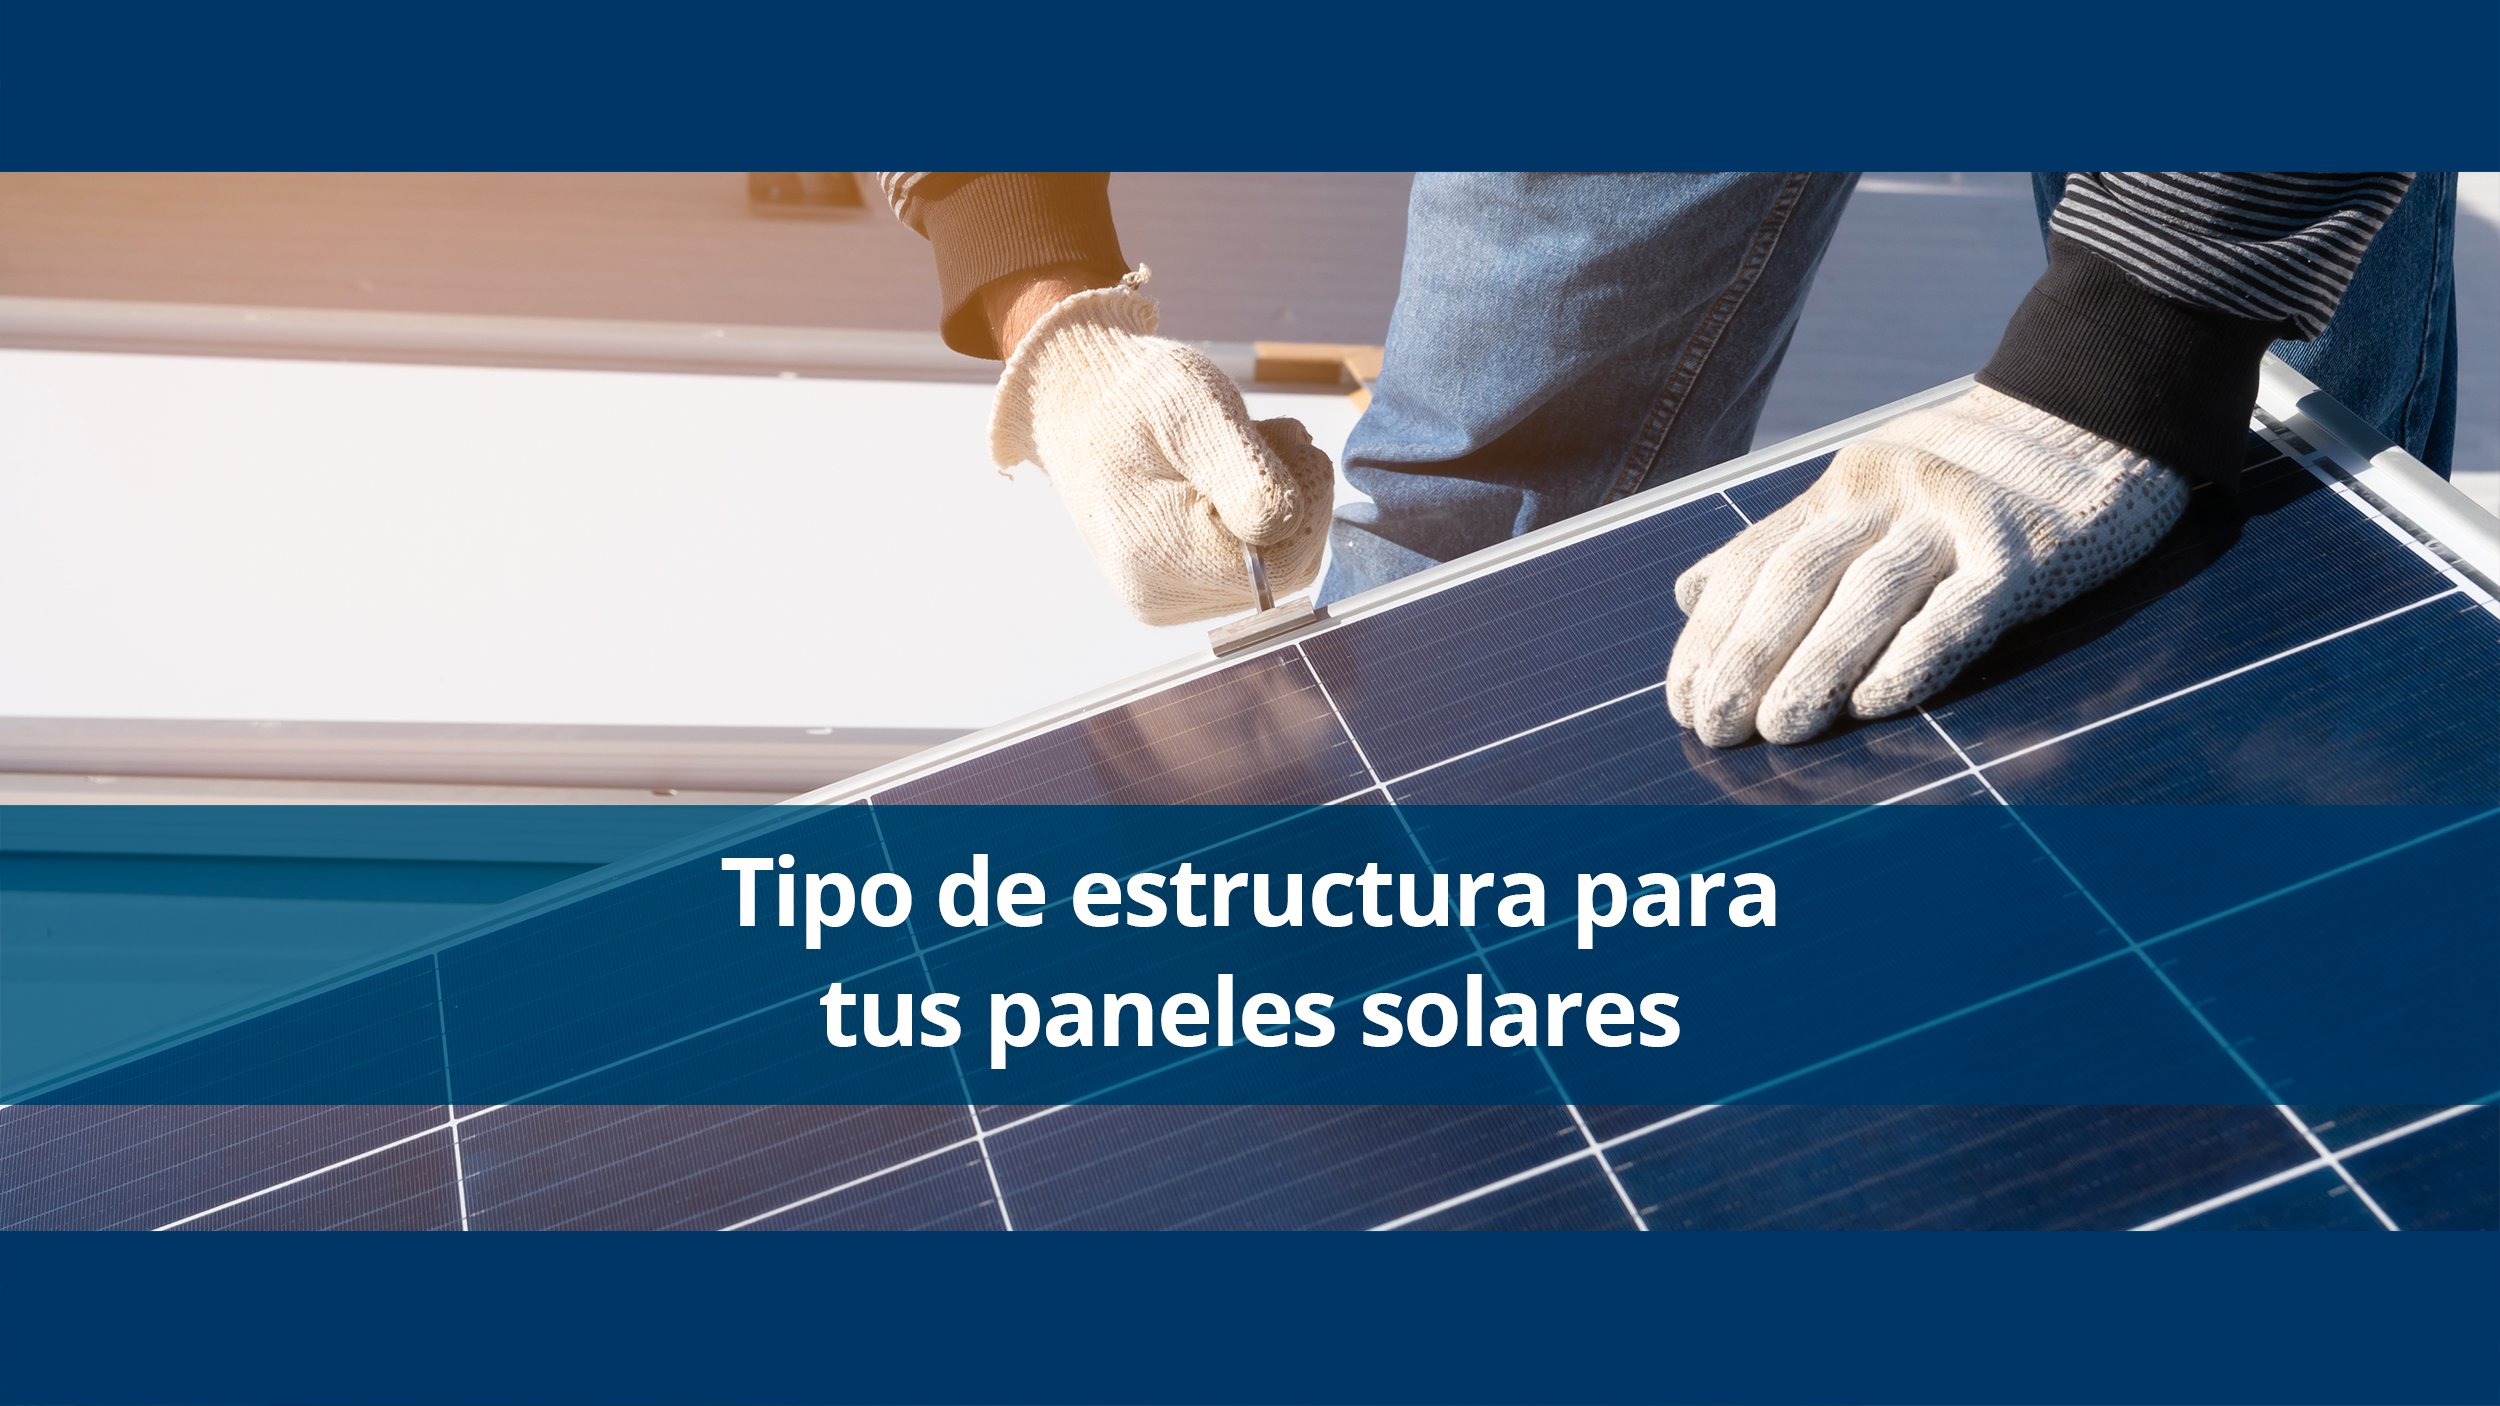 Estructuras y Soportes para Placas solares Fotovoltaicas